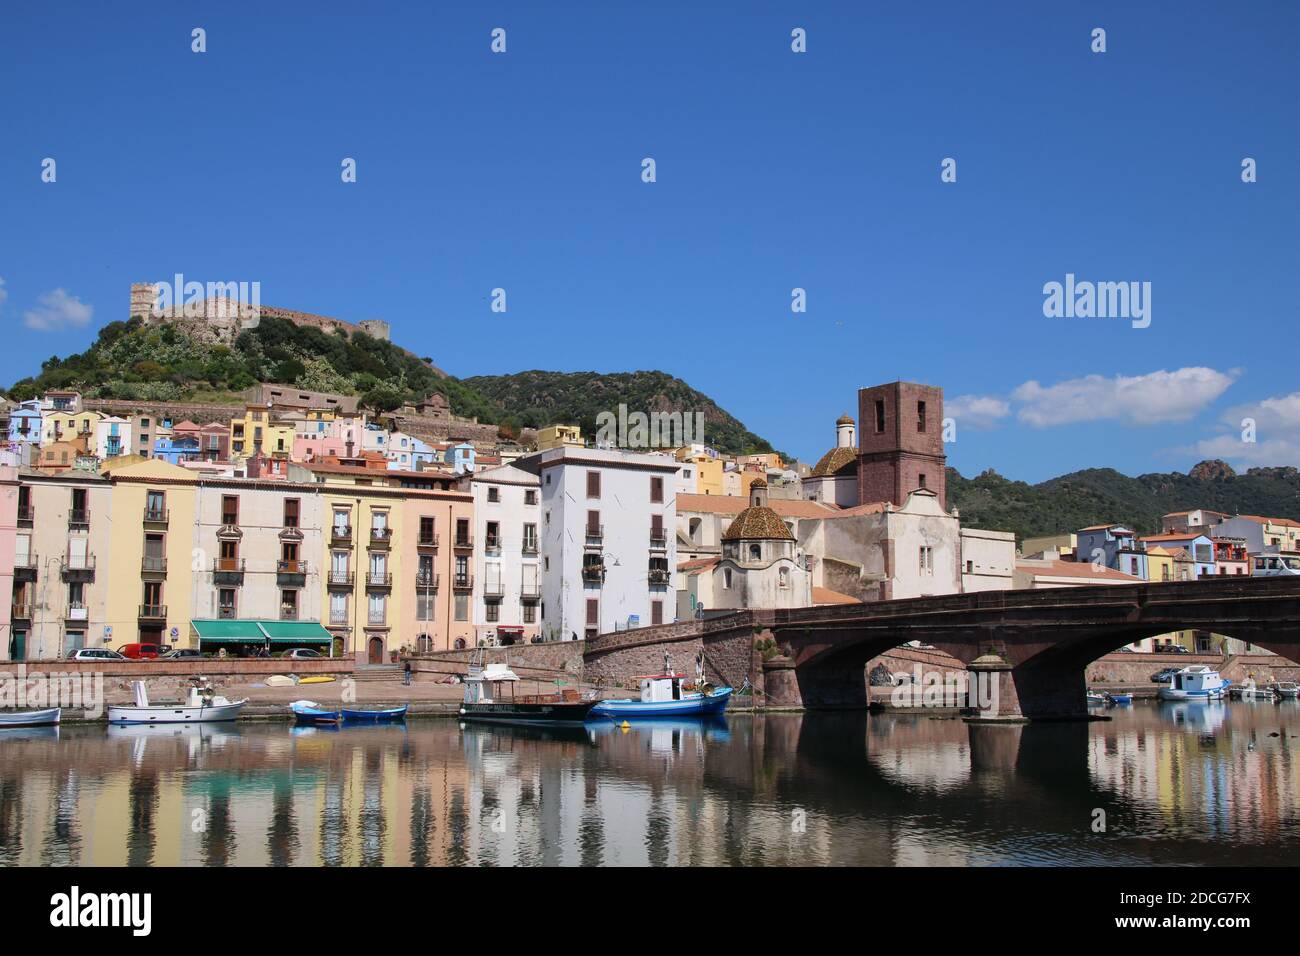 Una giornata di sole a Bosa, Sardegna, Italia lungo il fiume Temo. Case colorate si riflettono sull'acqua, aggiungendo il fascino di questa città storica Foto Stock